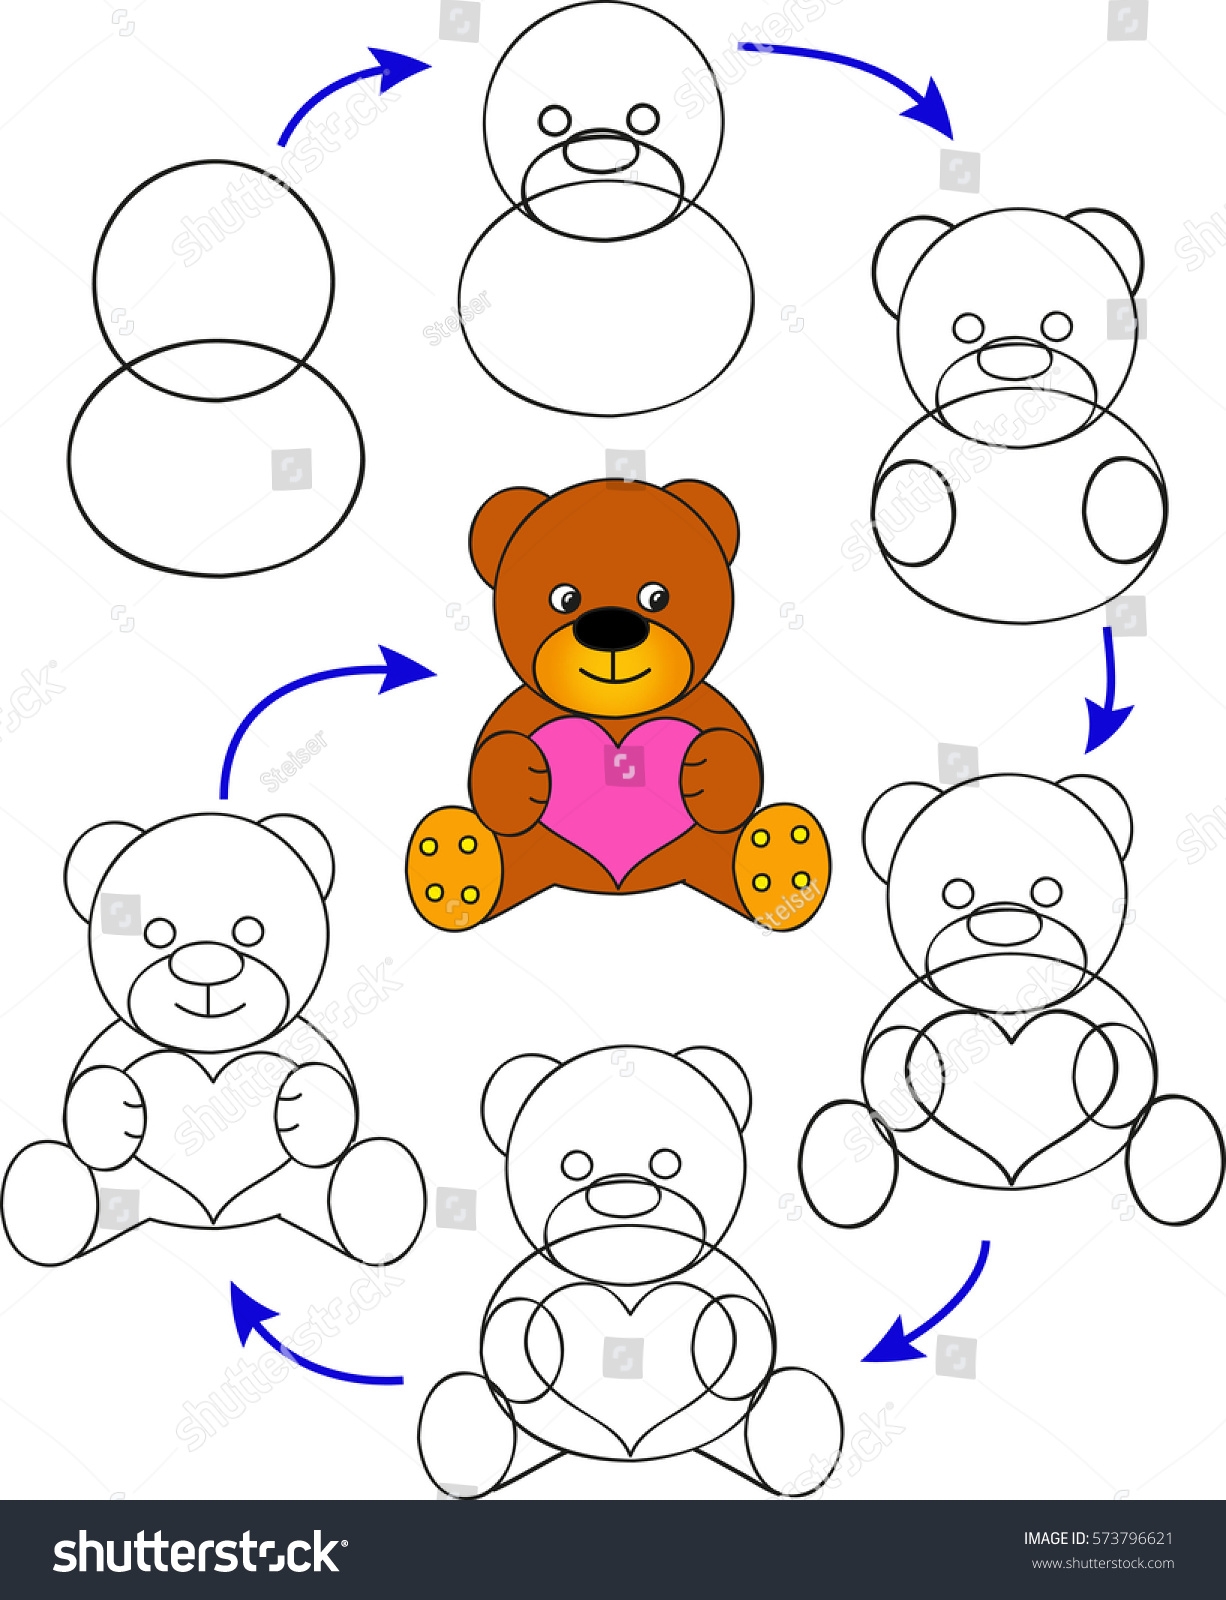 Как нарисовать медвежонка легко и просто